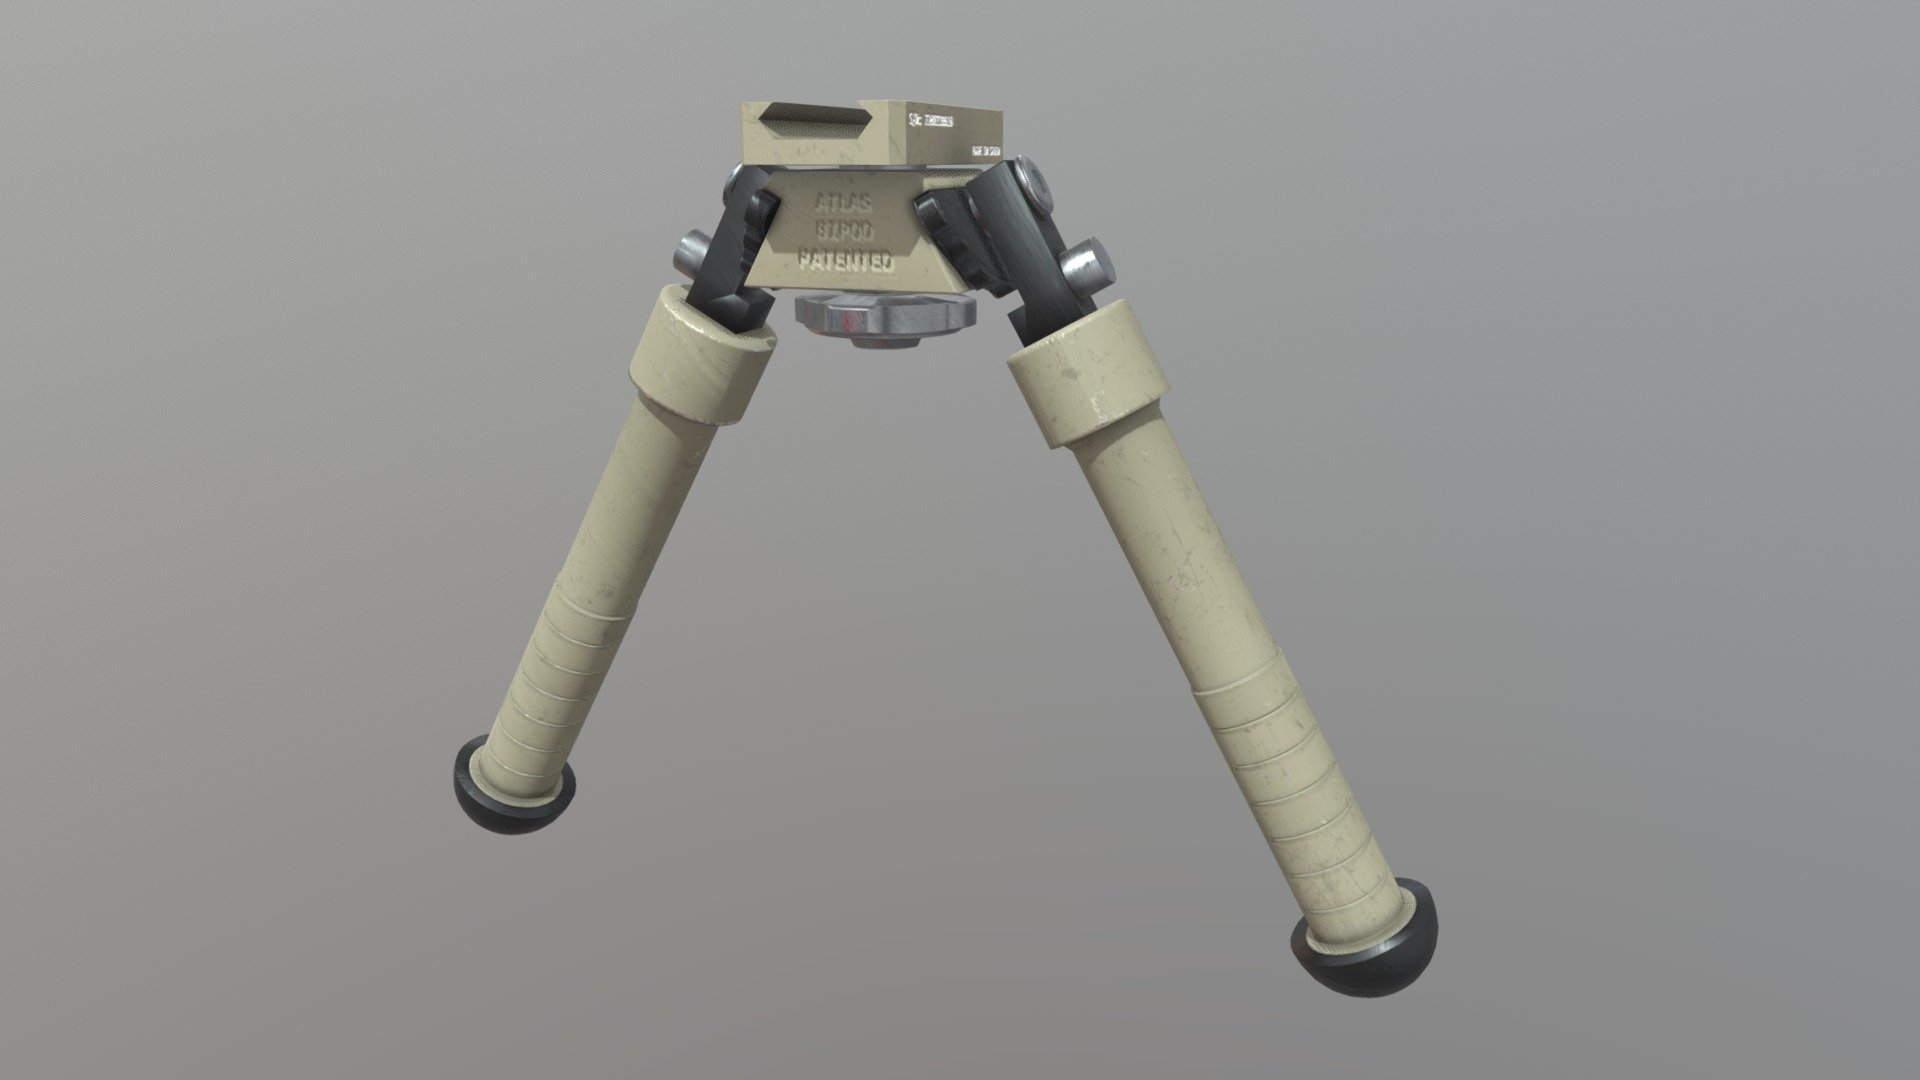 Atlas Bipod Gun